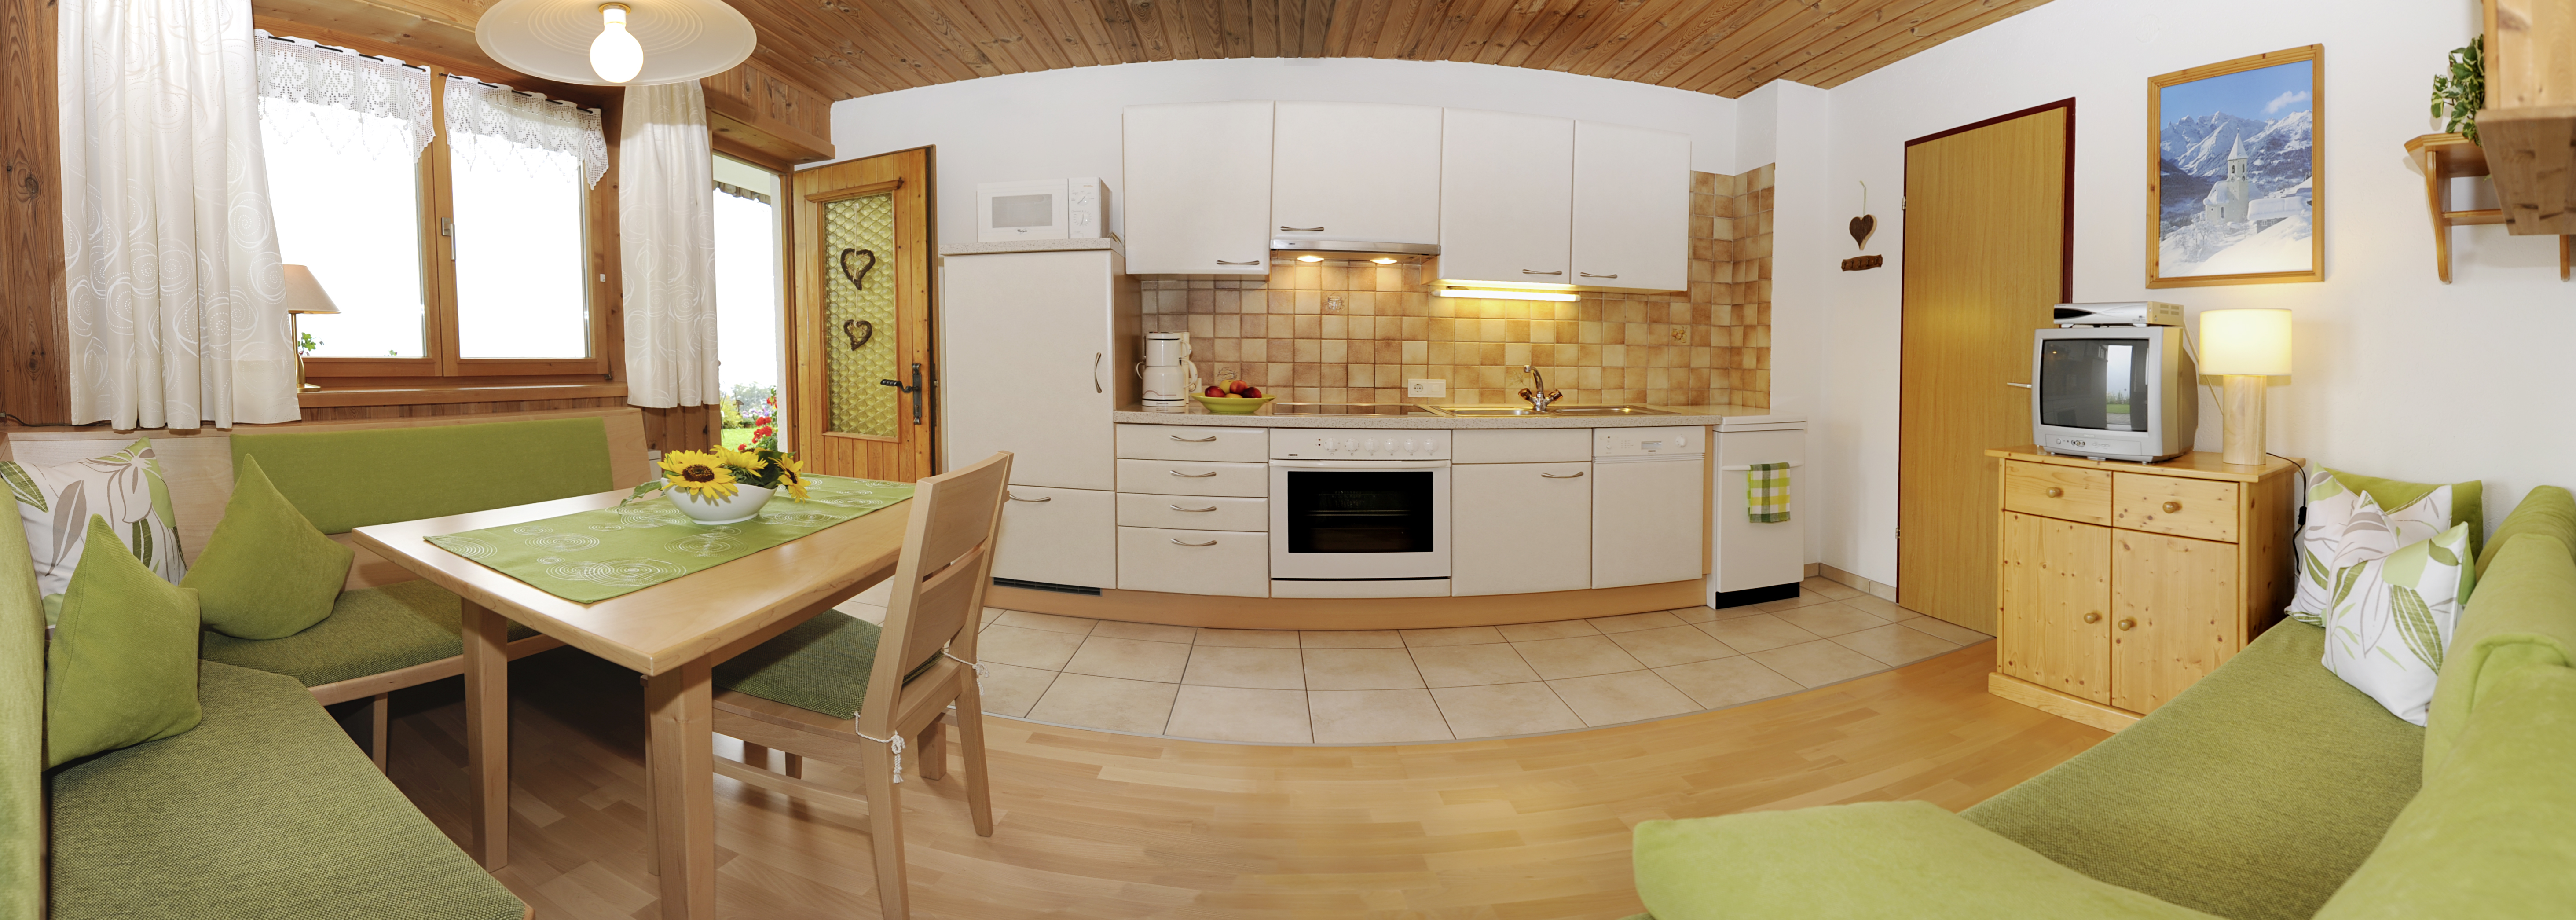 Küche, Wohn- & Esszimmer